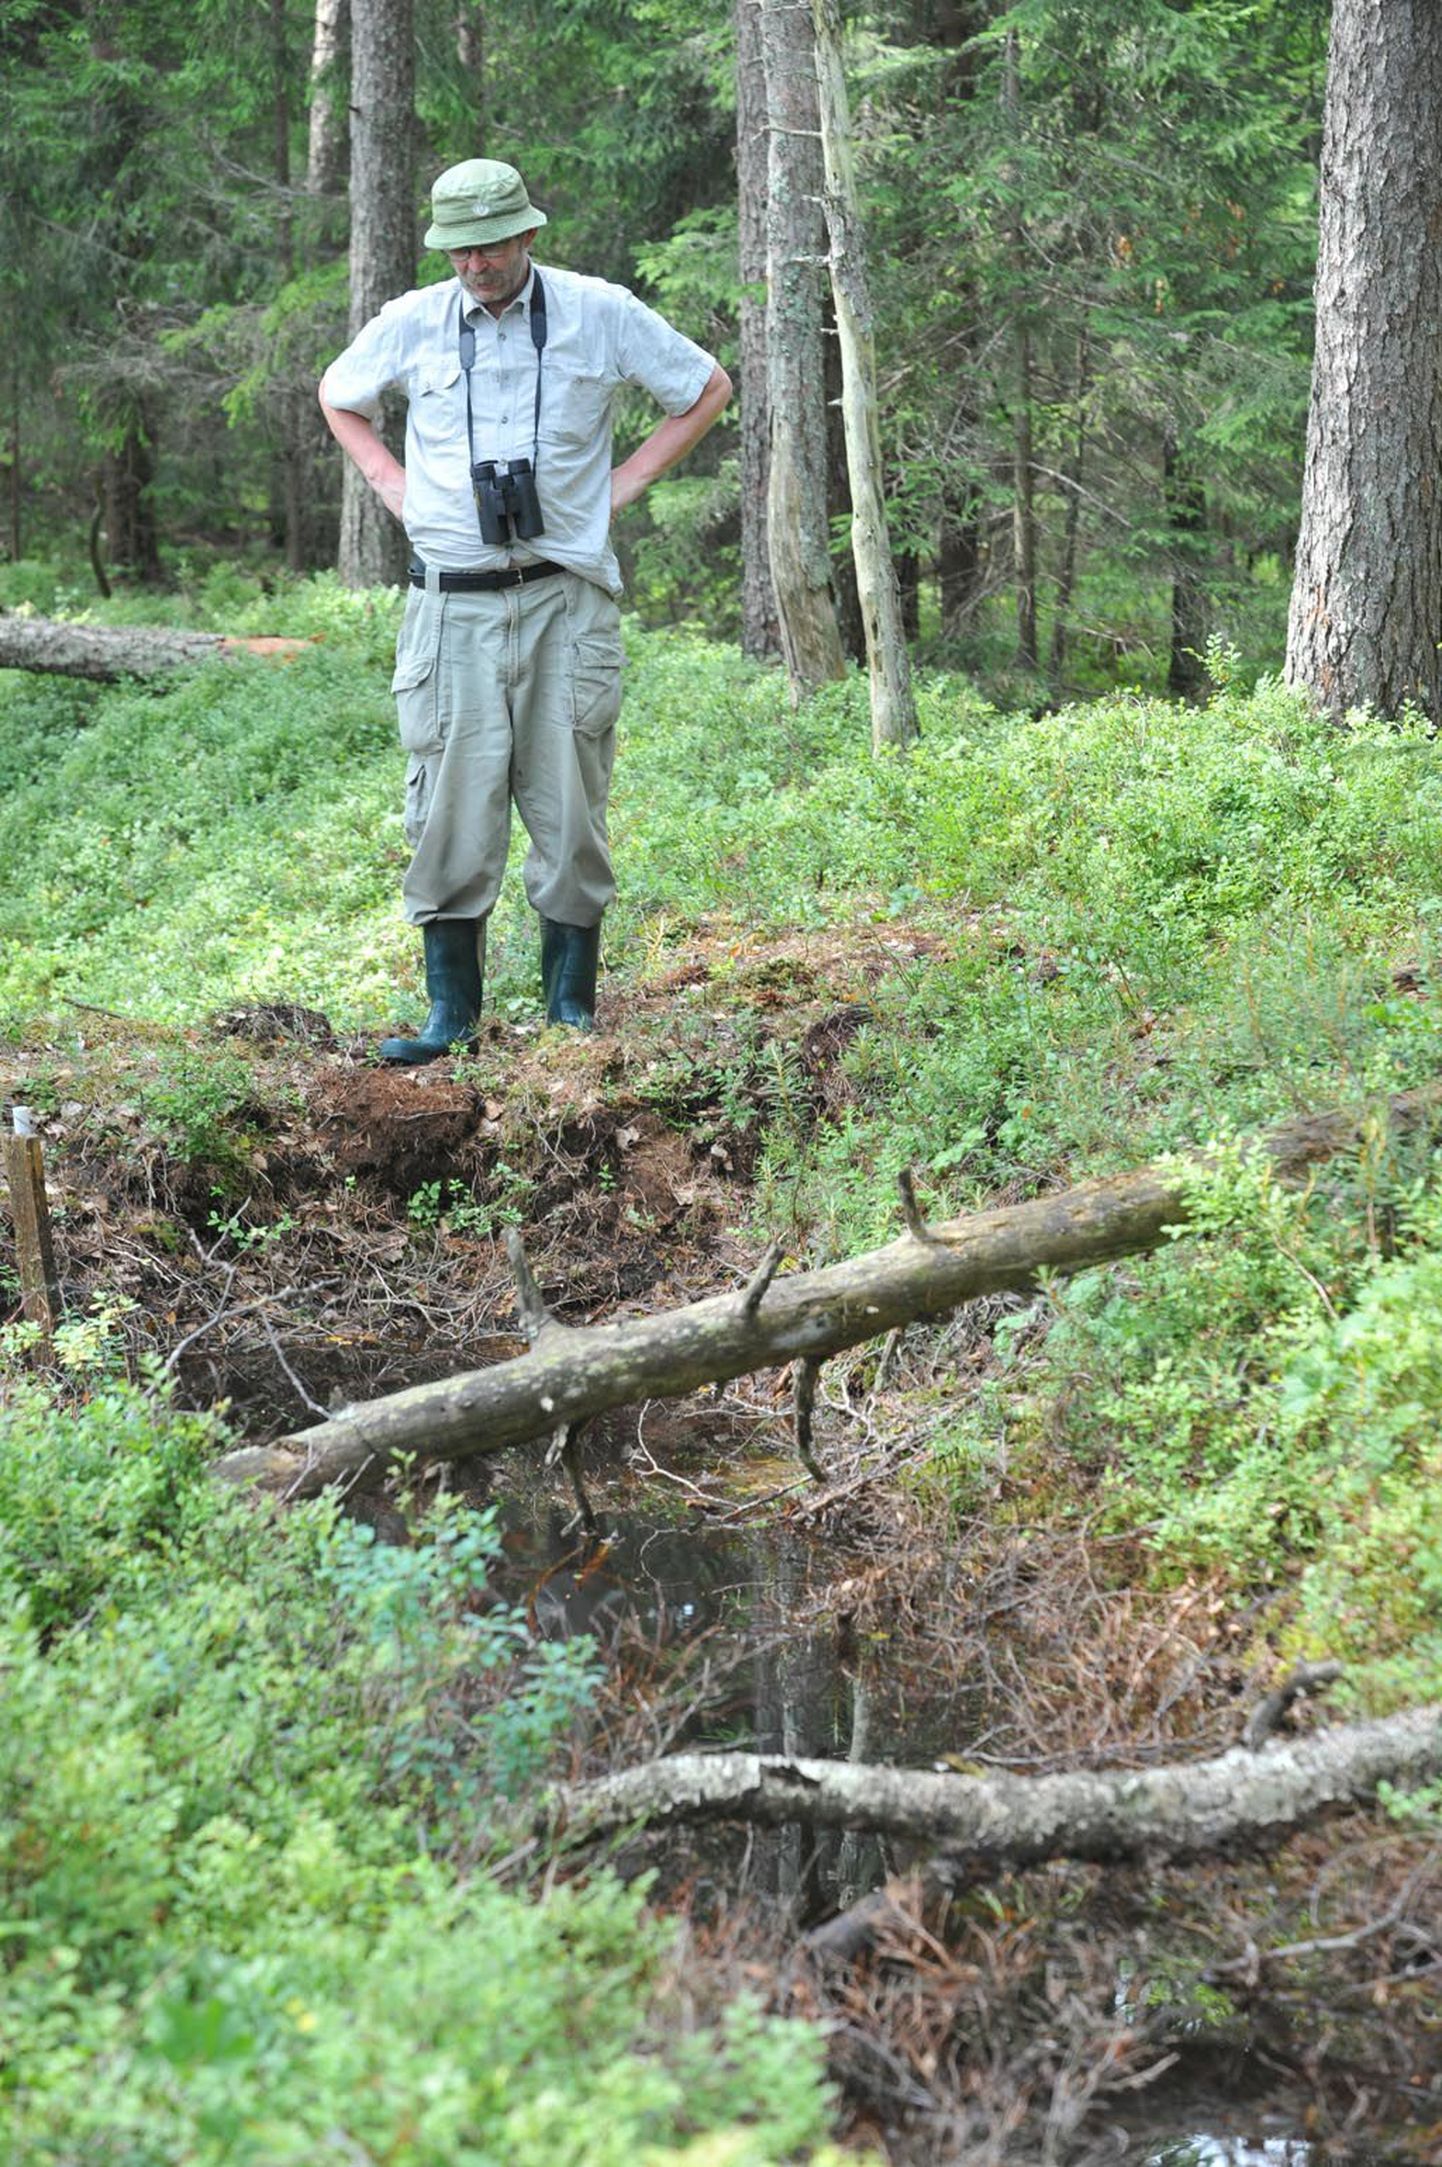 Turbasamblast tehtud tamm on tugev ja kannatab nii vett kui tallamist, nagu keskkonnaameti Pärnu-Viljandi regiooni looduskaitse juhtivspetsialist Agu Leivits tõestas.